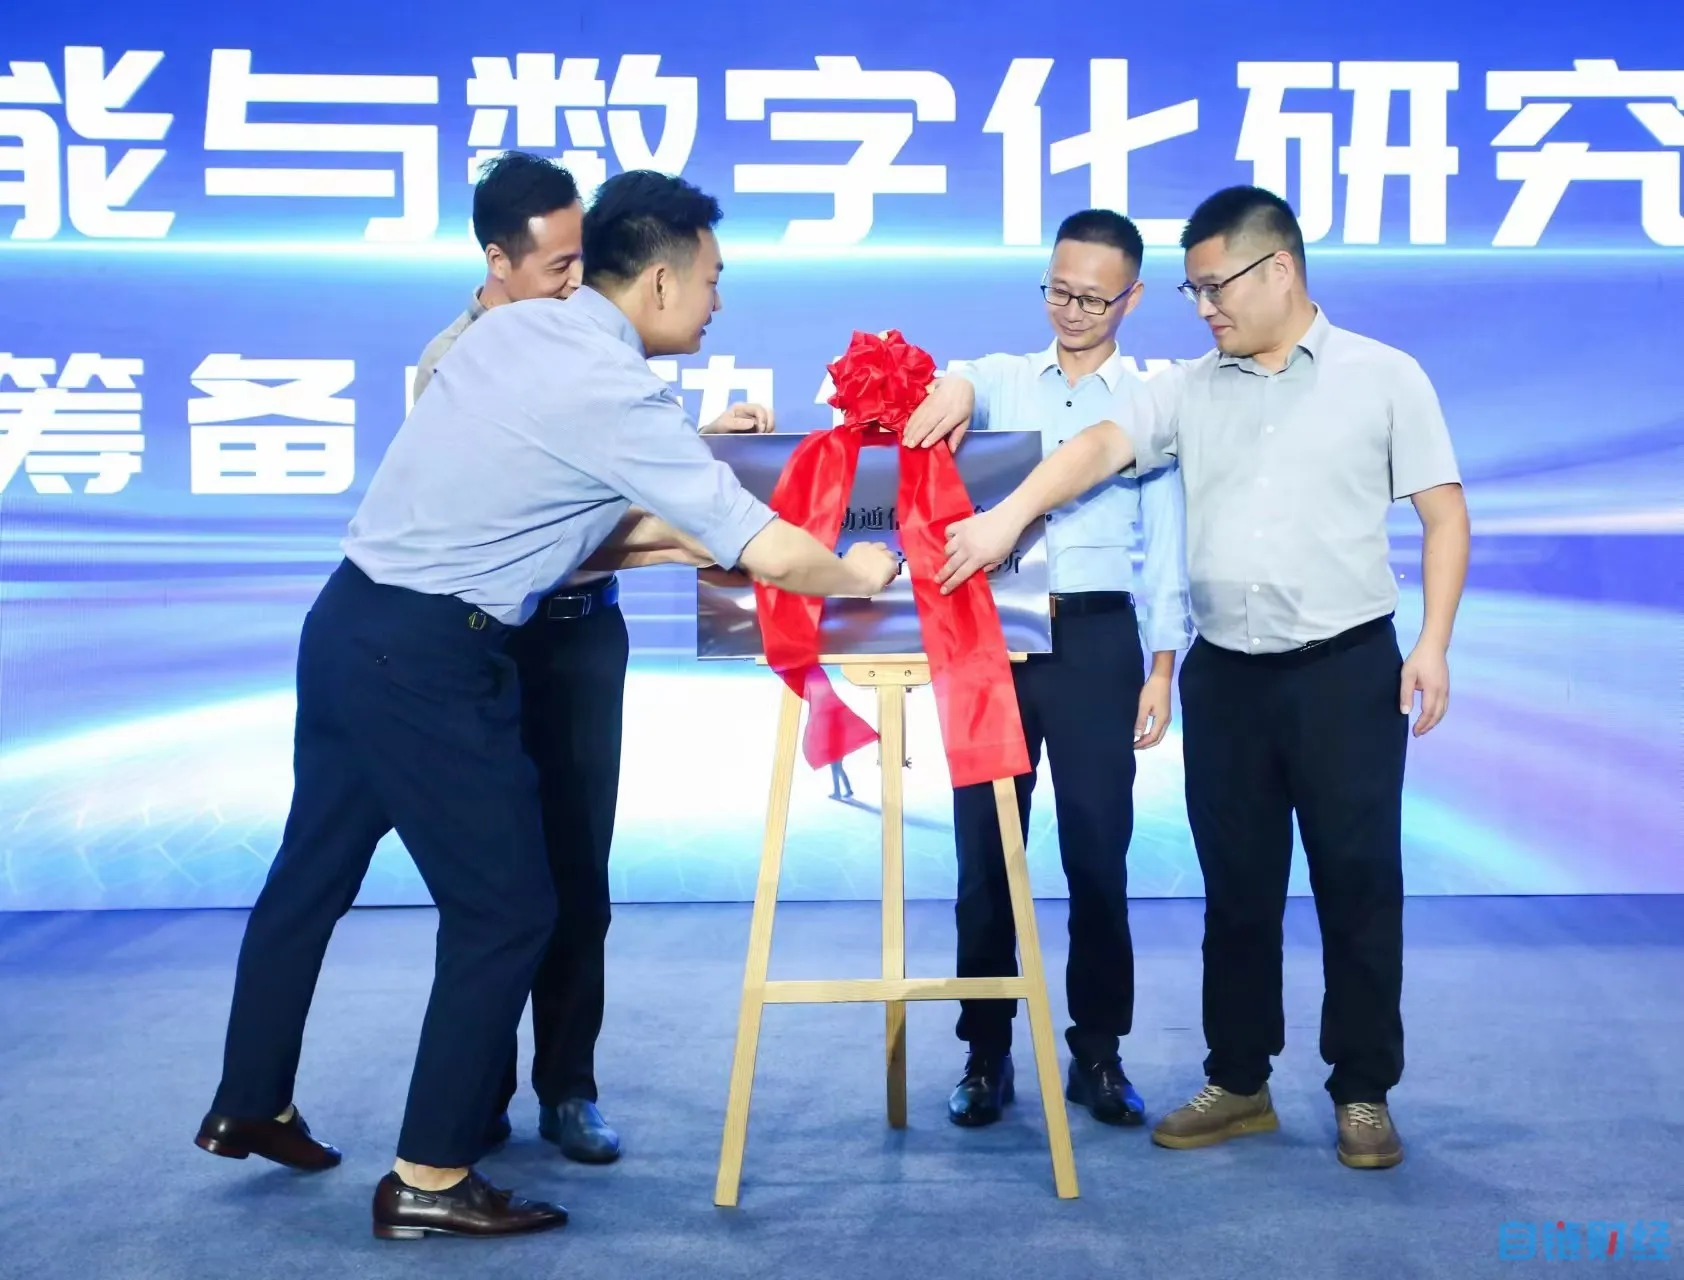 中国移动通信联合会教考中心人工智能与数字化研究所启动筹备工作